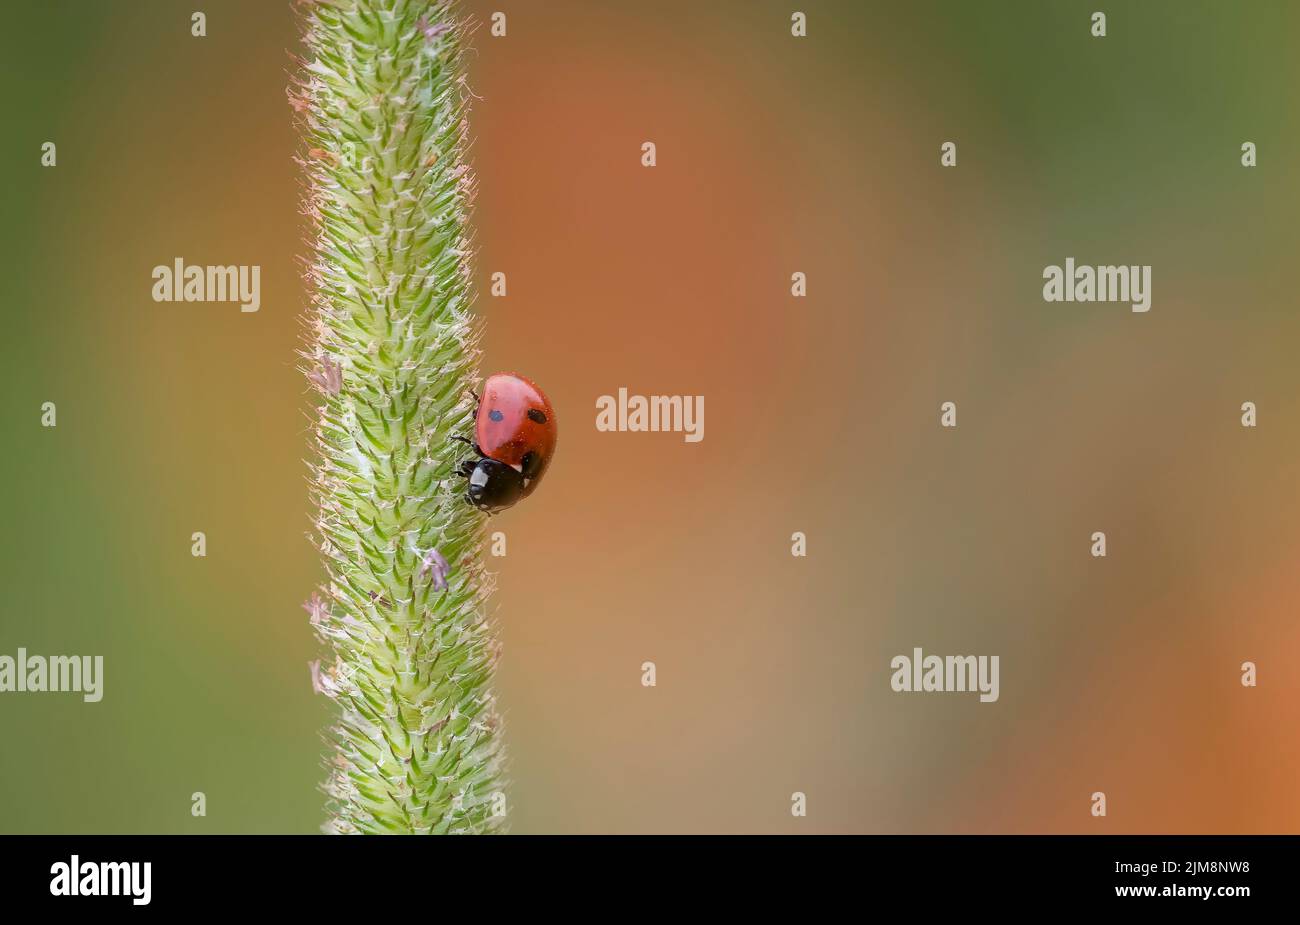 Una Ladybird de 7 puntos, (Coccinella septempunctata), descansando sobre una flor de hierba, con un campo de amapola fuera del foco en el fondo Foto de stock